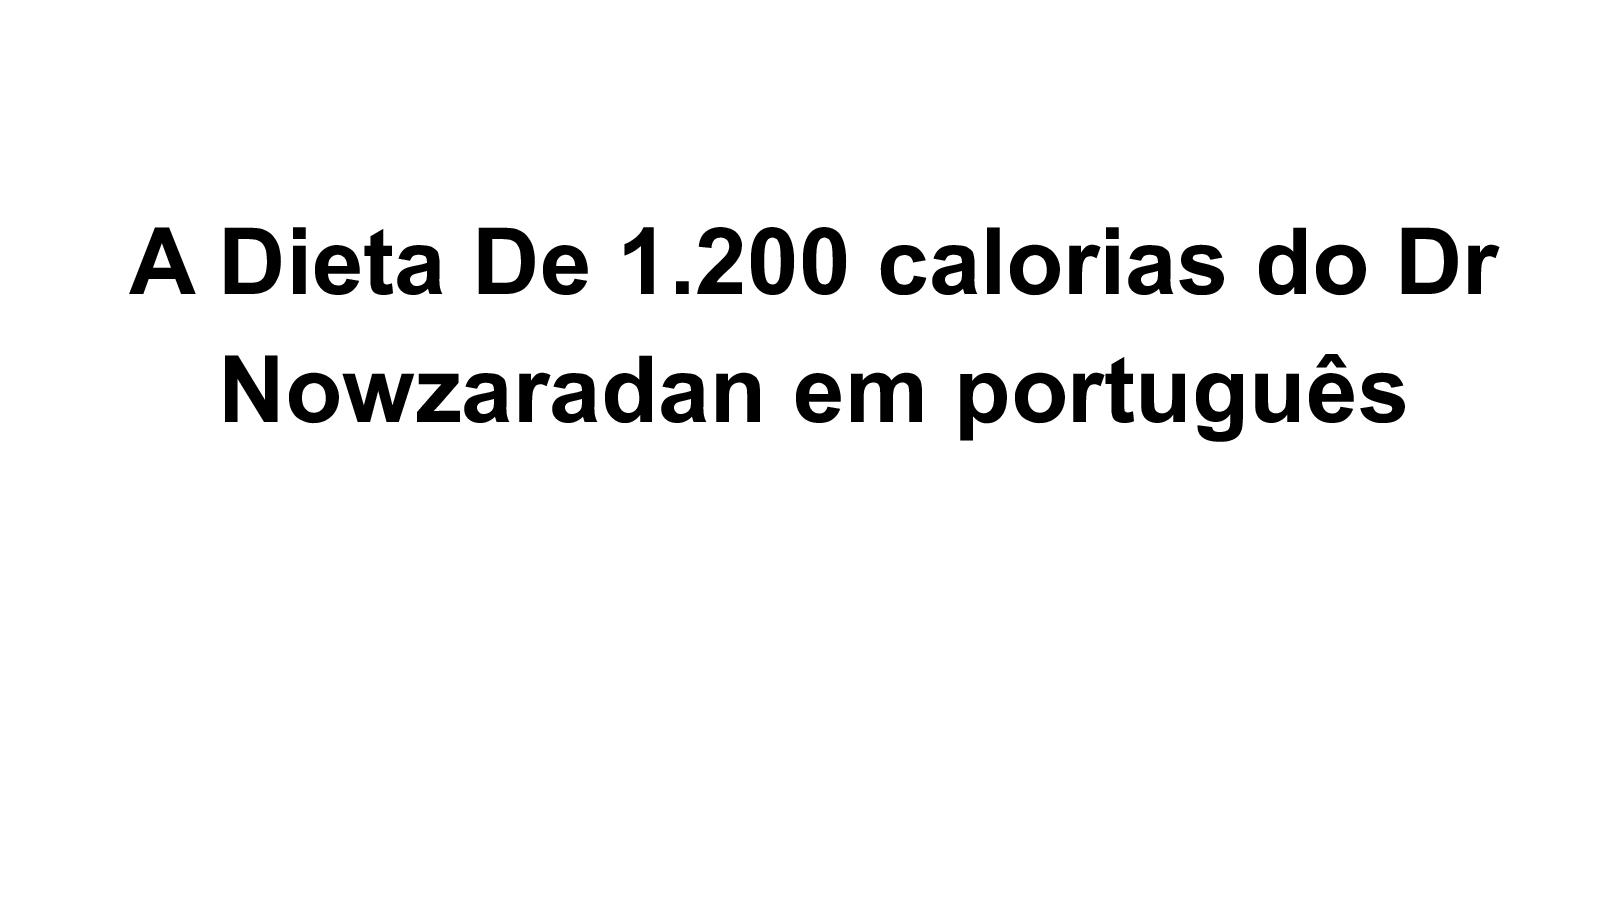 Calaméo - Dieta De 1200 Calorias Do Dr Nowzaradan Em Português - cardápio da dieta do dr nowzaradan traduzida